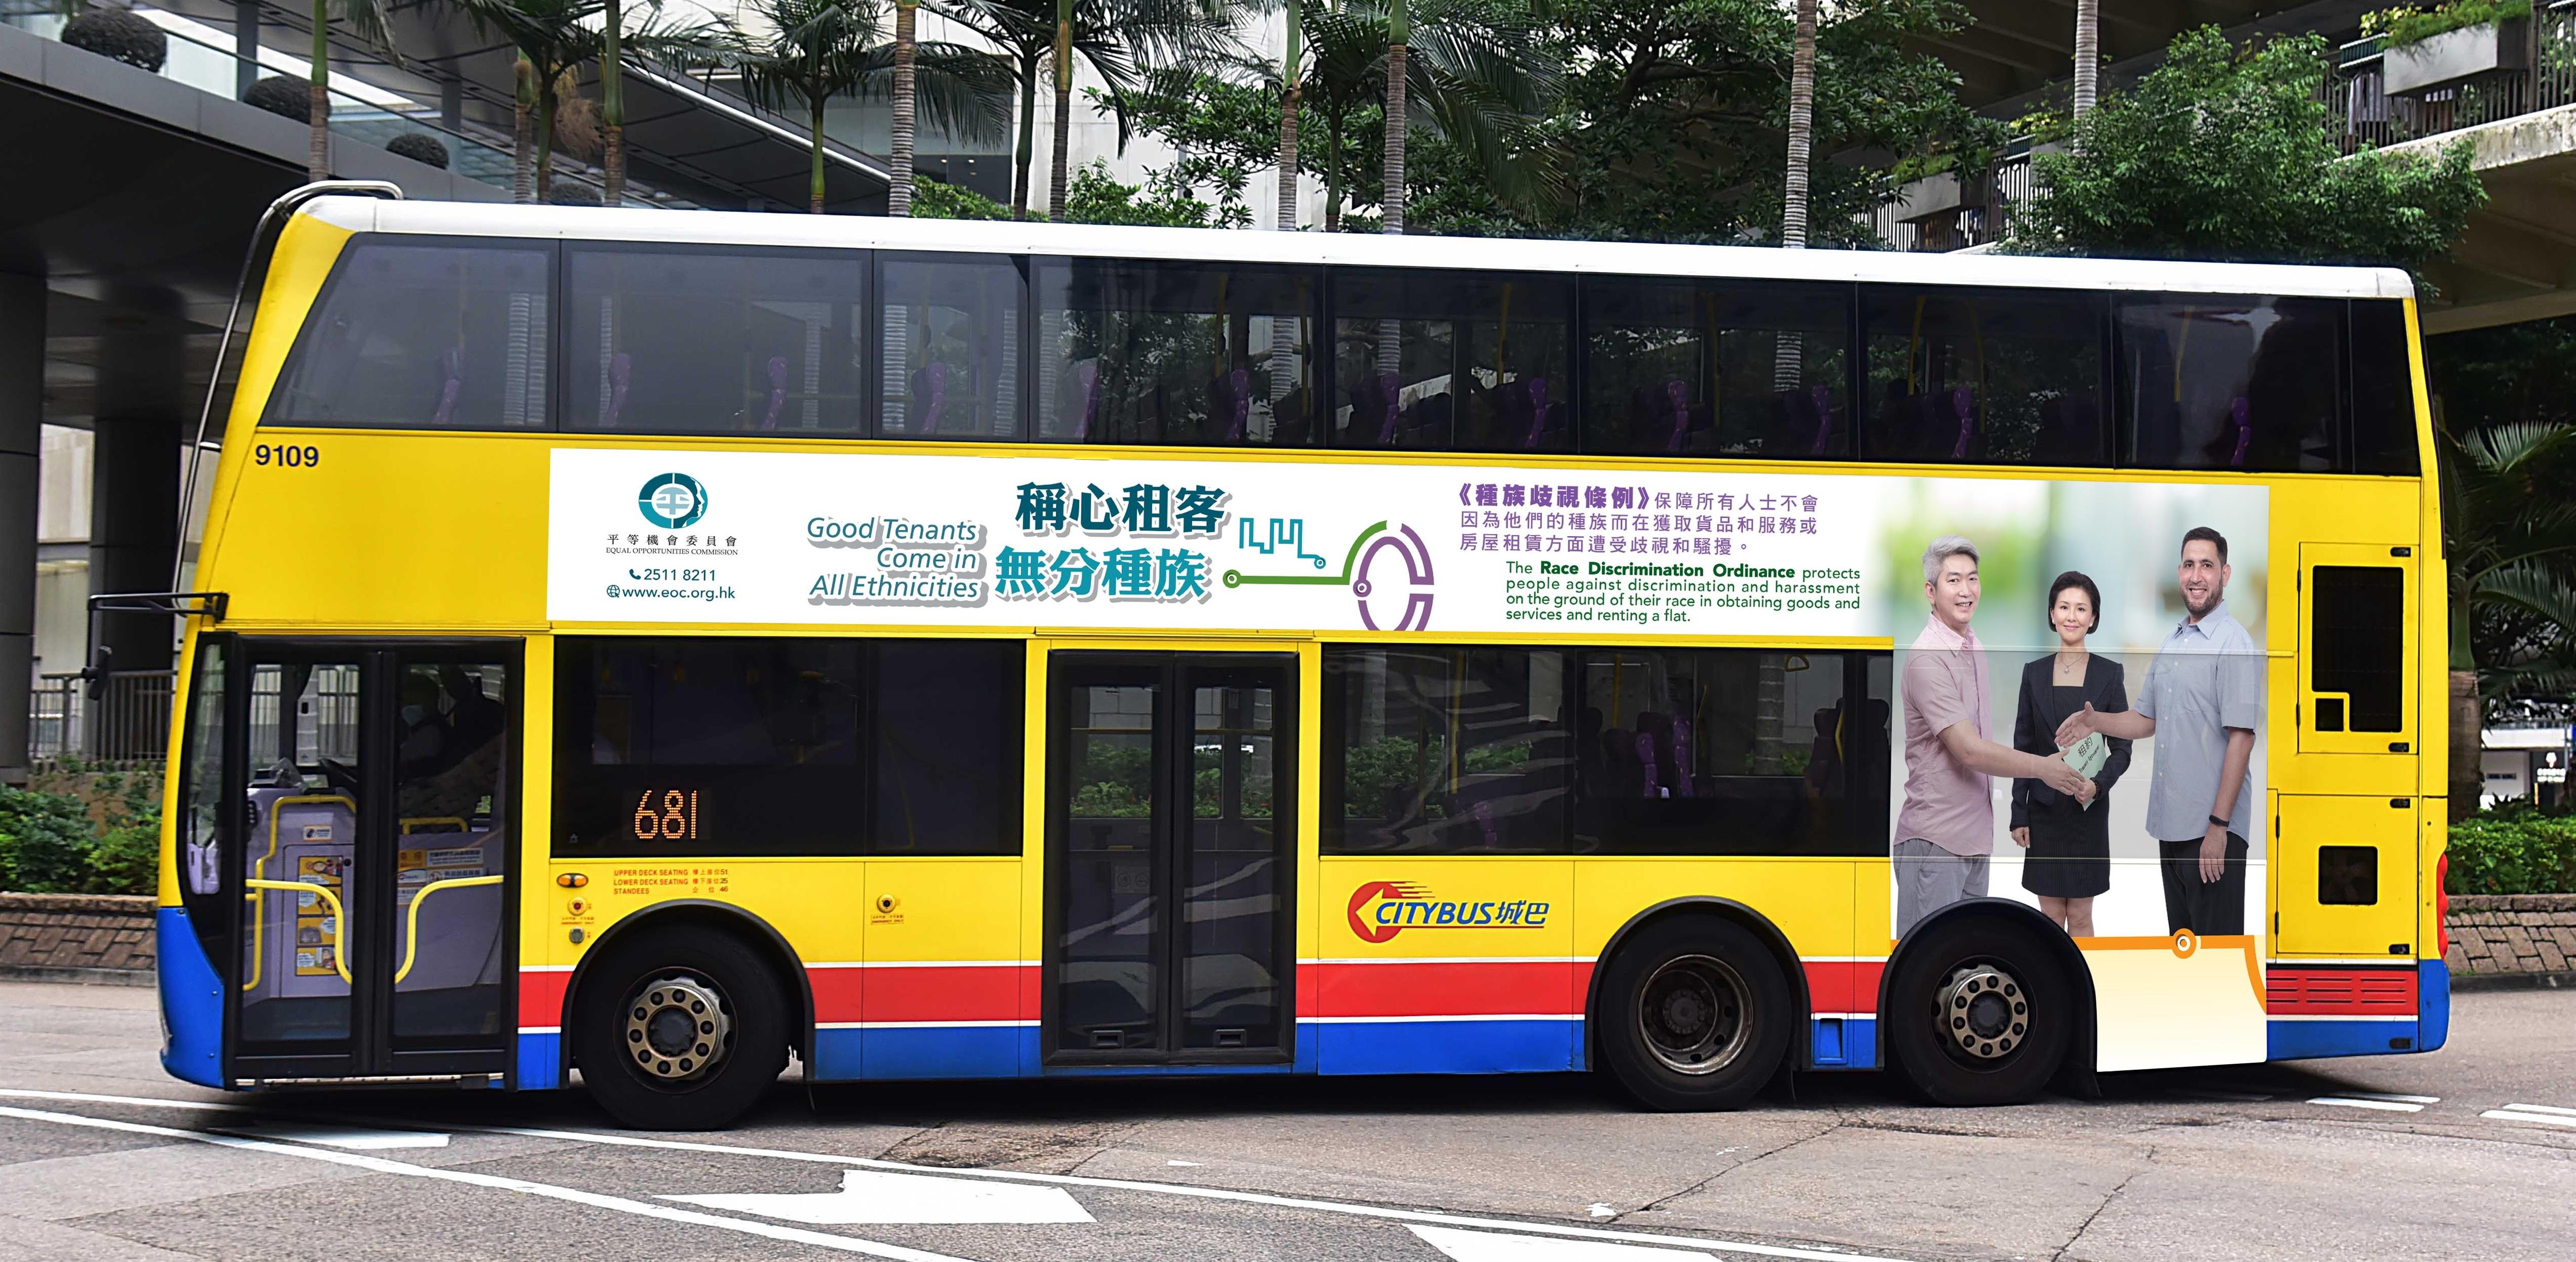 平機會推出以「稱心租客　無分種族」為題的巴士車身宣傳廣告，以推廣種族平等的物業租賃。